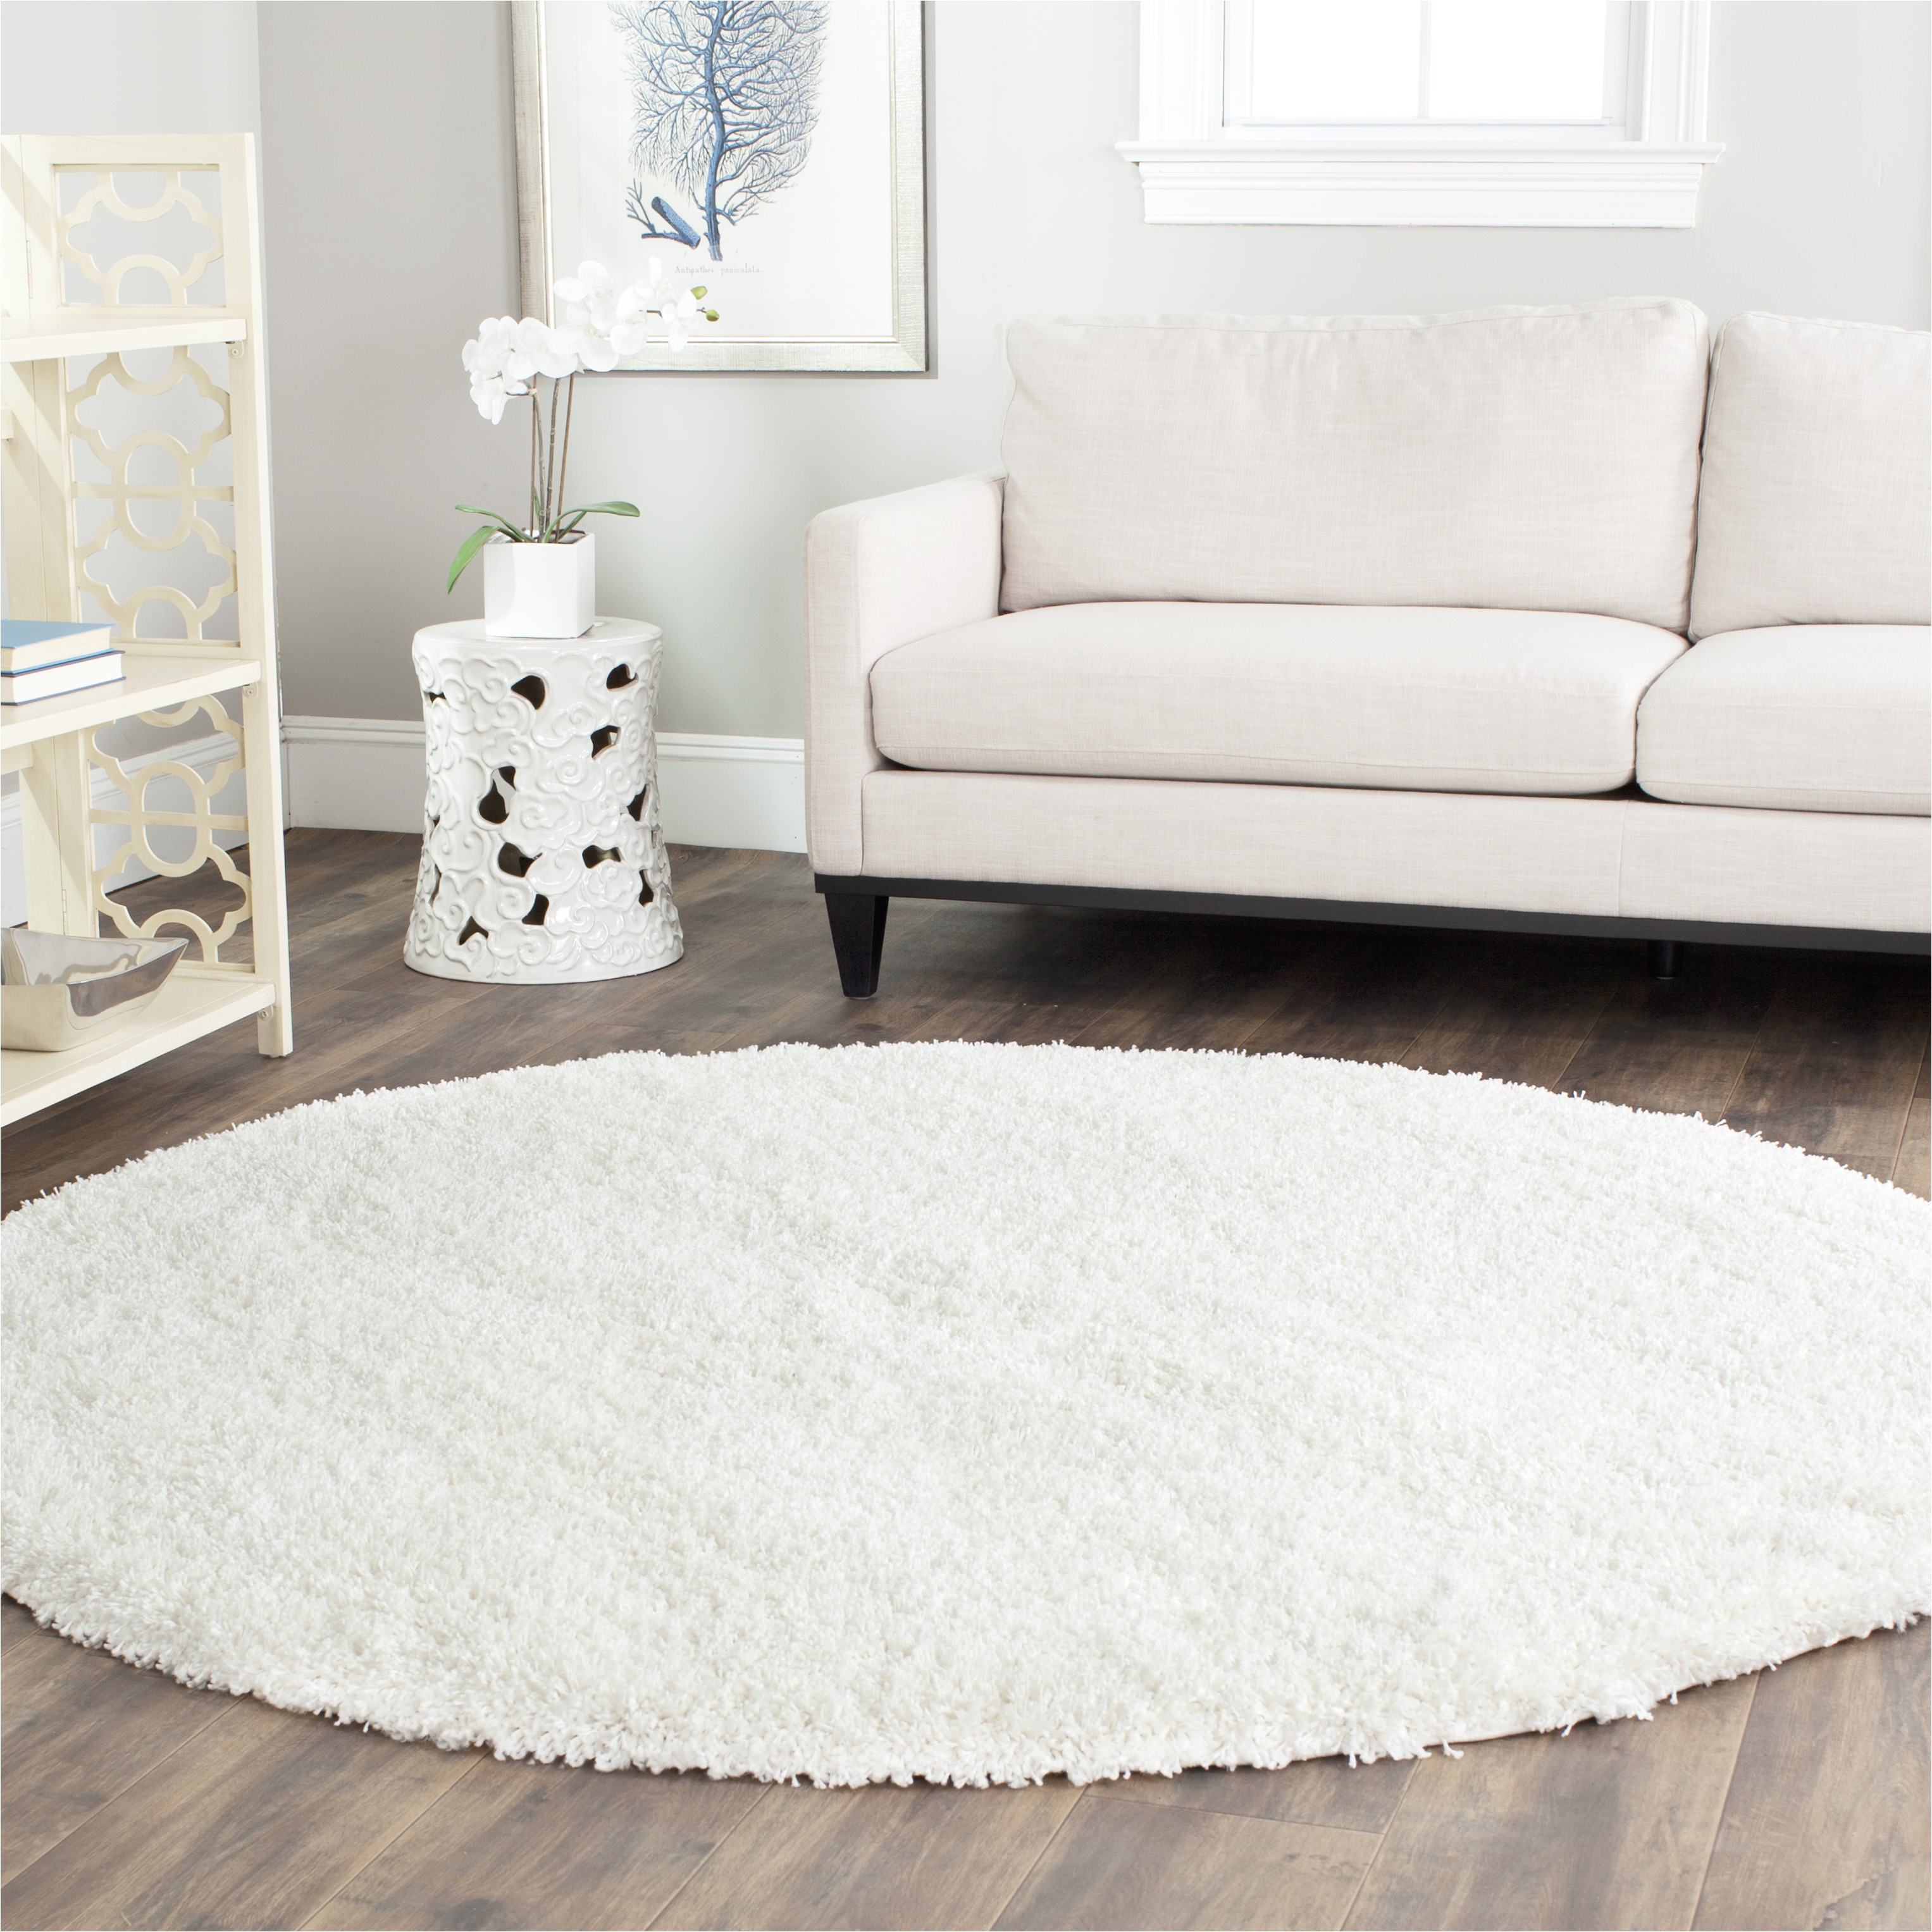 living fabulous elegant white area rug 5x7 modern 4 luxury jcpenney rugs of elegant